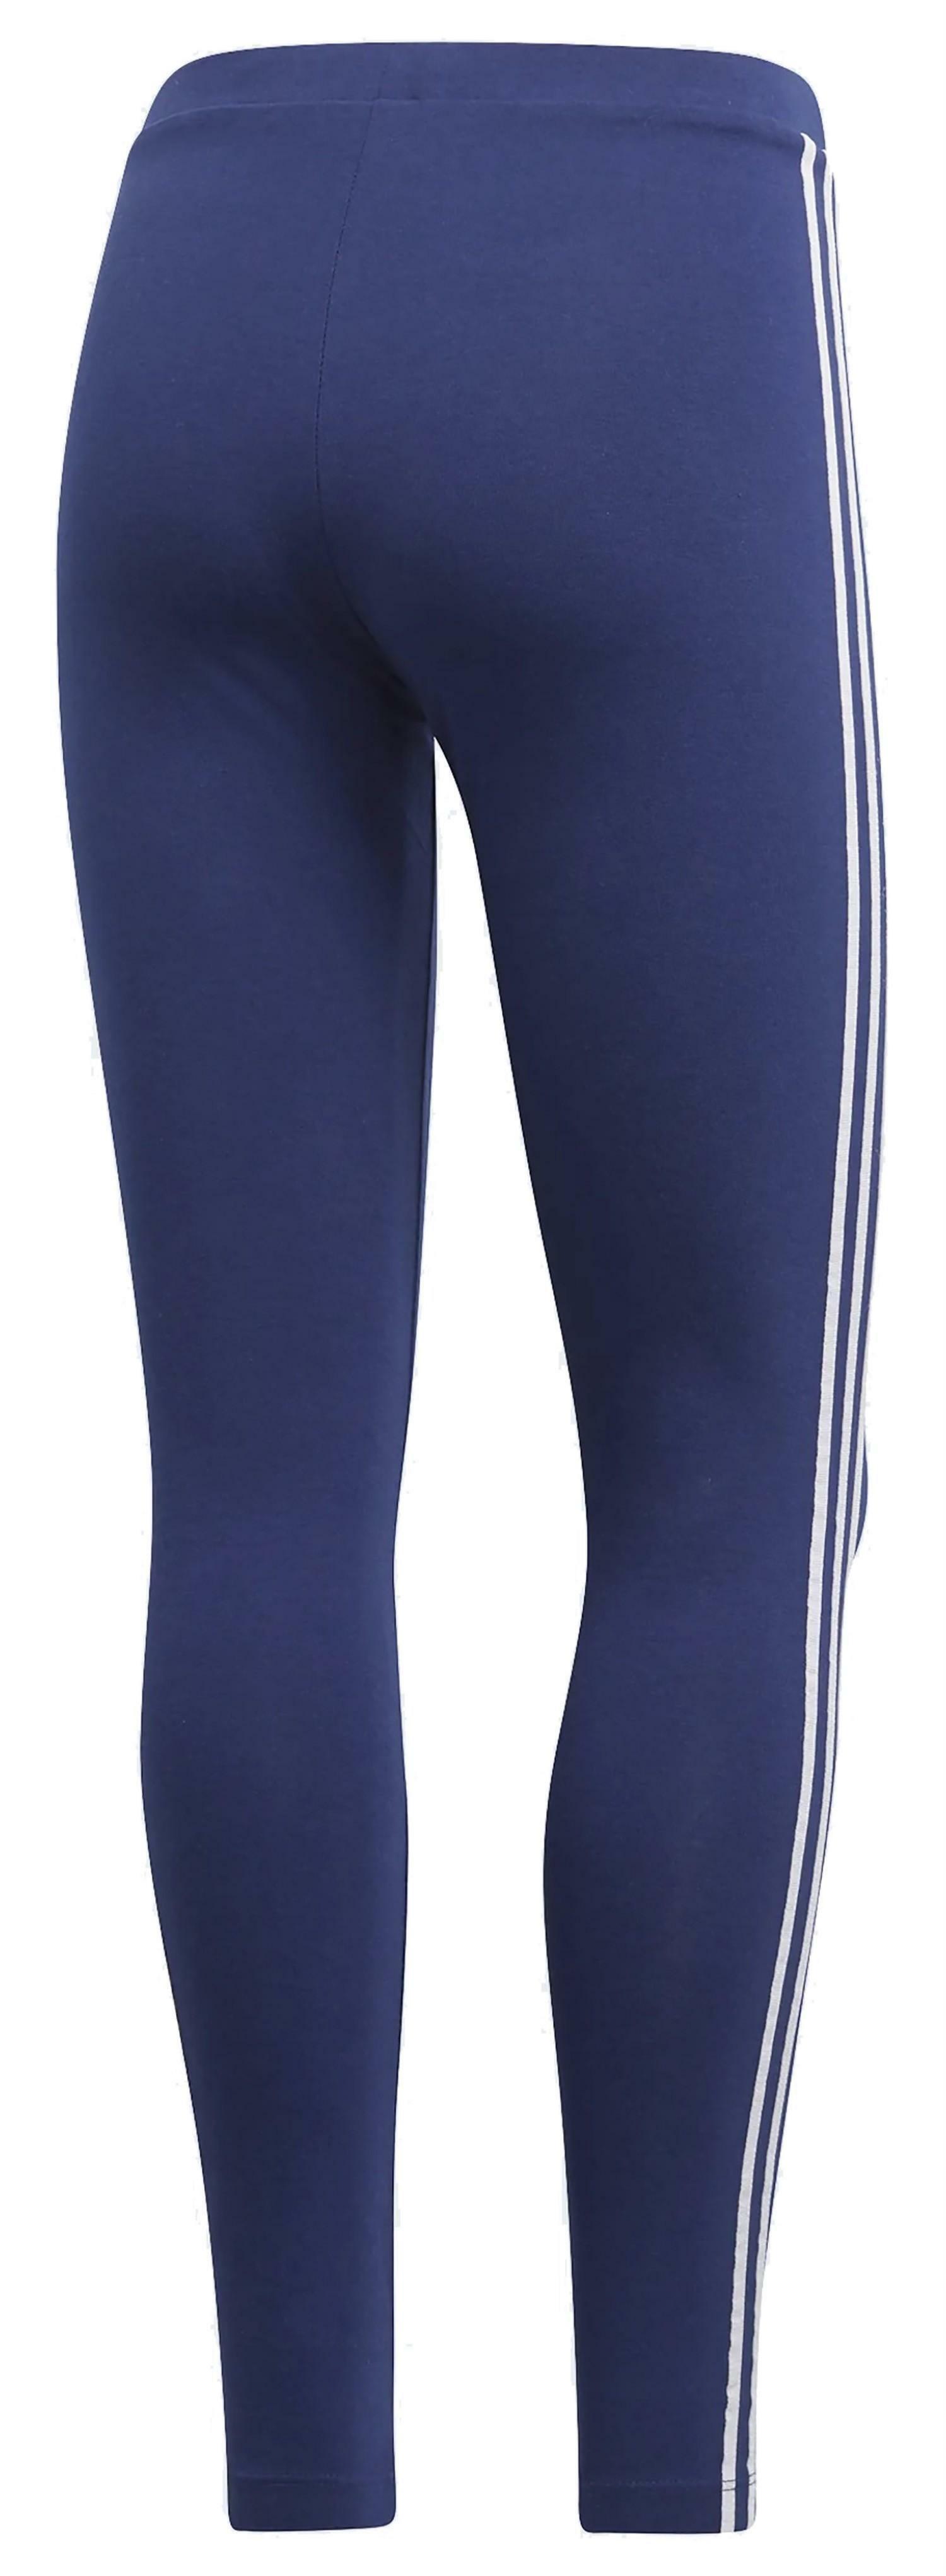 adidas adidas 3 str tight leggings donna blu dv2615